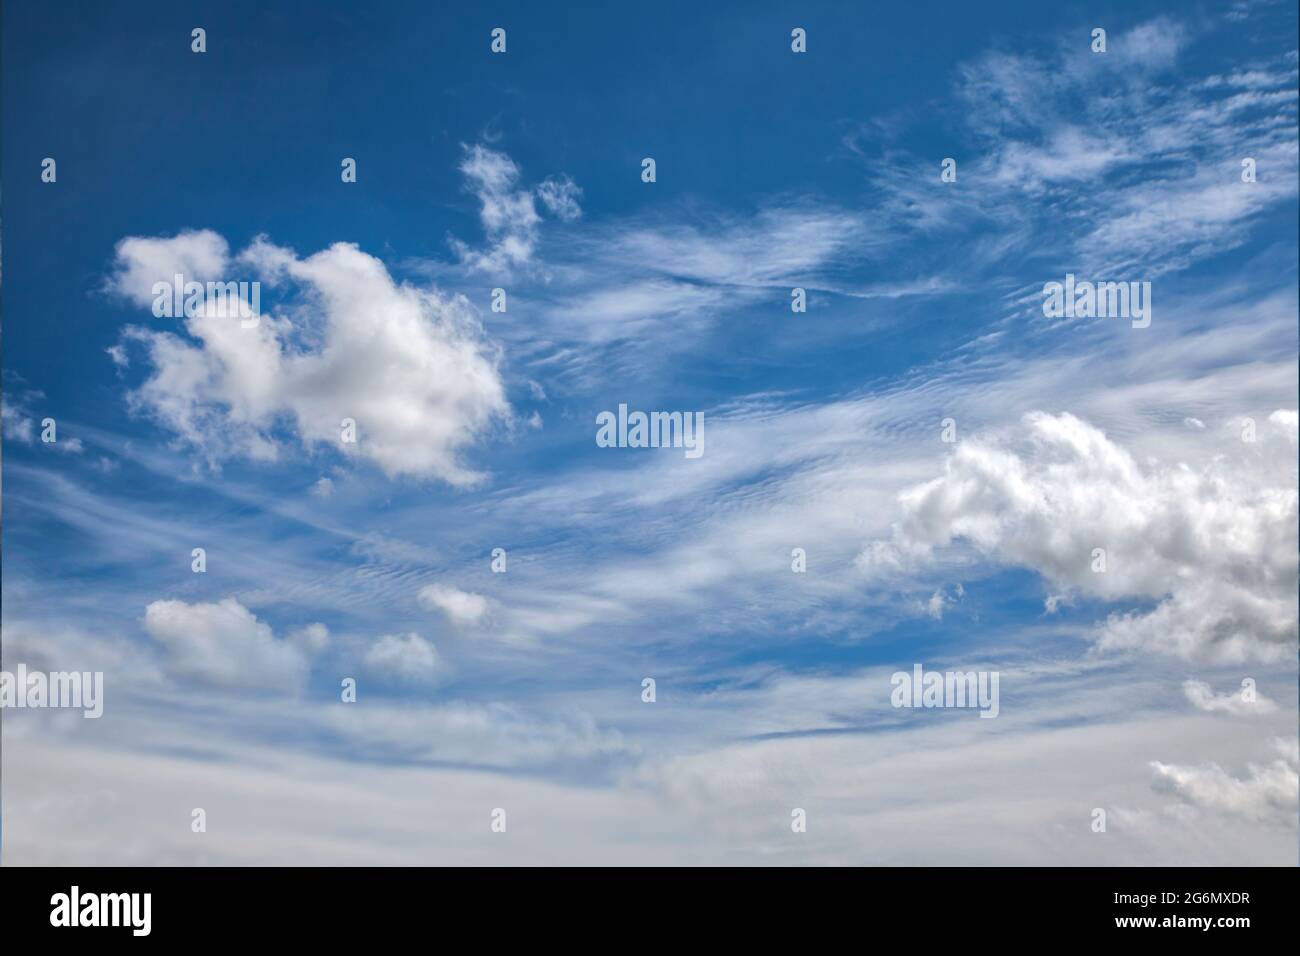 KONZEPTFOTOGRAFIE: Blauer Himmel mit dramatischer Wolkenbildung Stockfoto